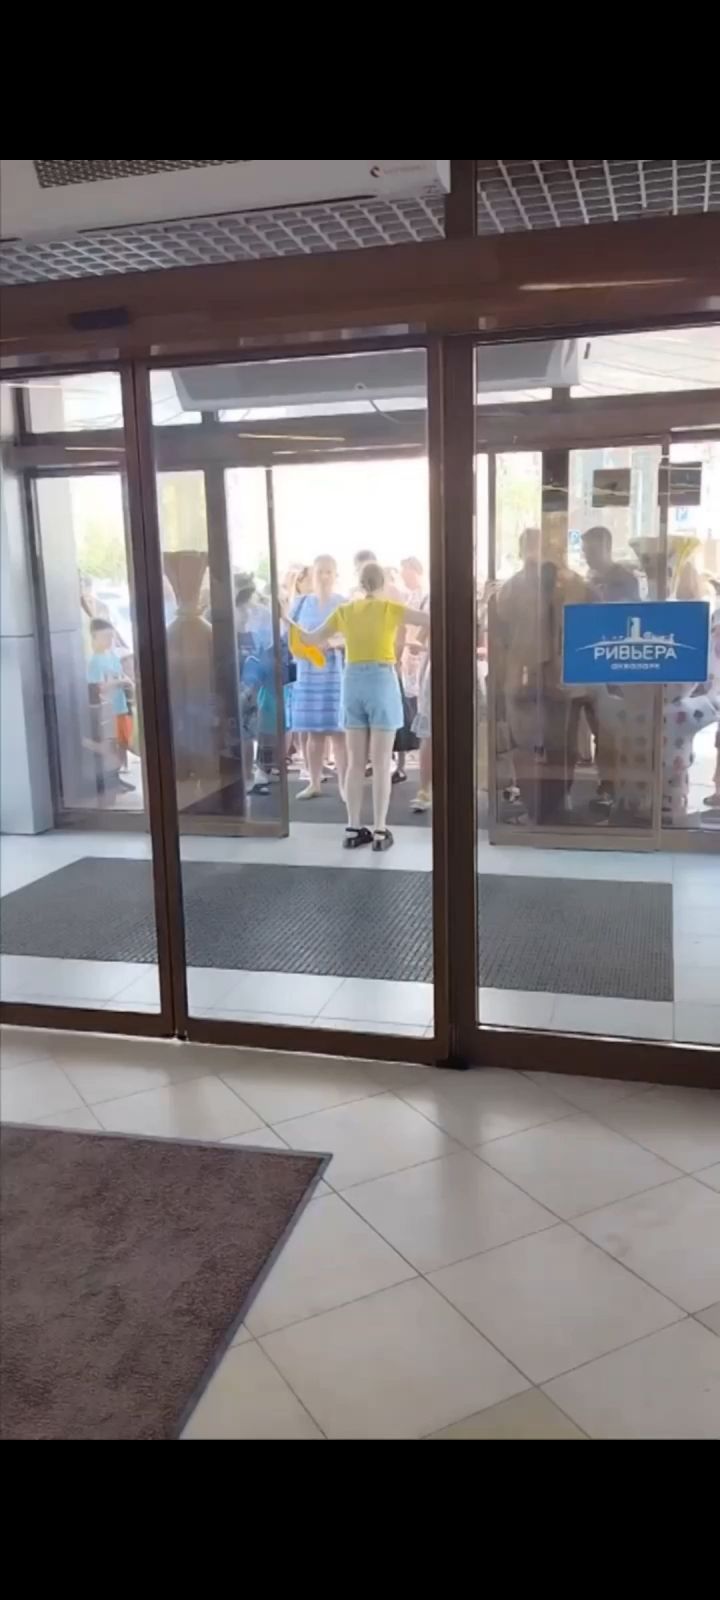 В Казанском аквапарке «Ривьера» эвакуировали людей